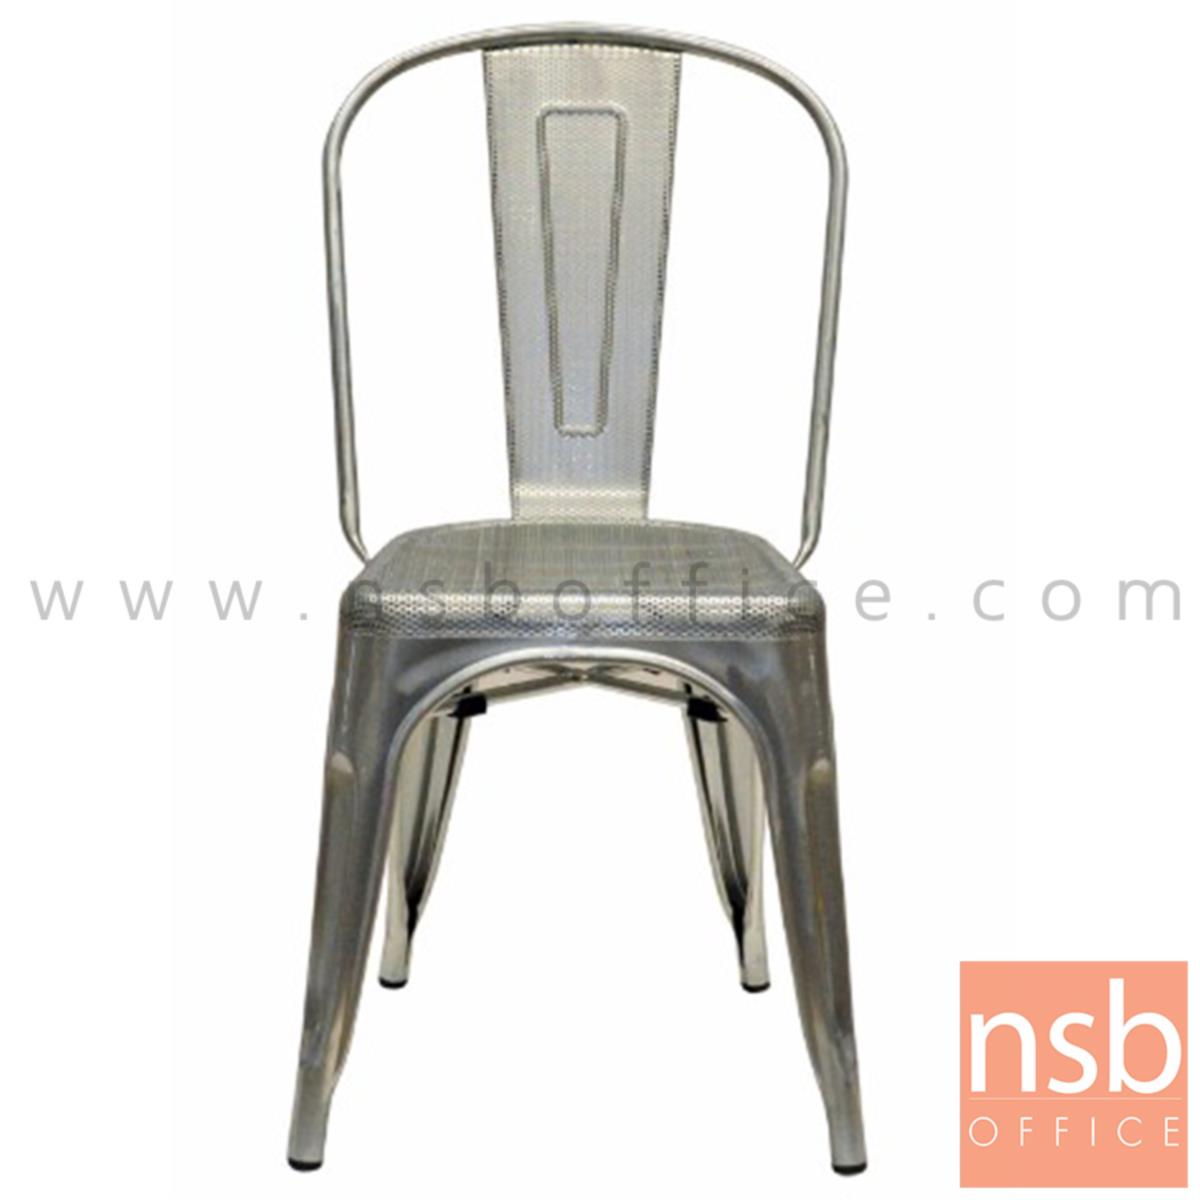 B29A213:เก้าอี้โมเดิร์นเหล็กรู รุ่น Alois (อาลอยส์) ขนาด 35W cm. โครงขาเหล็ก สีเทา